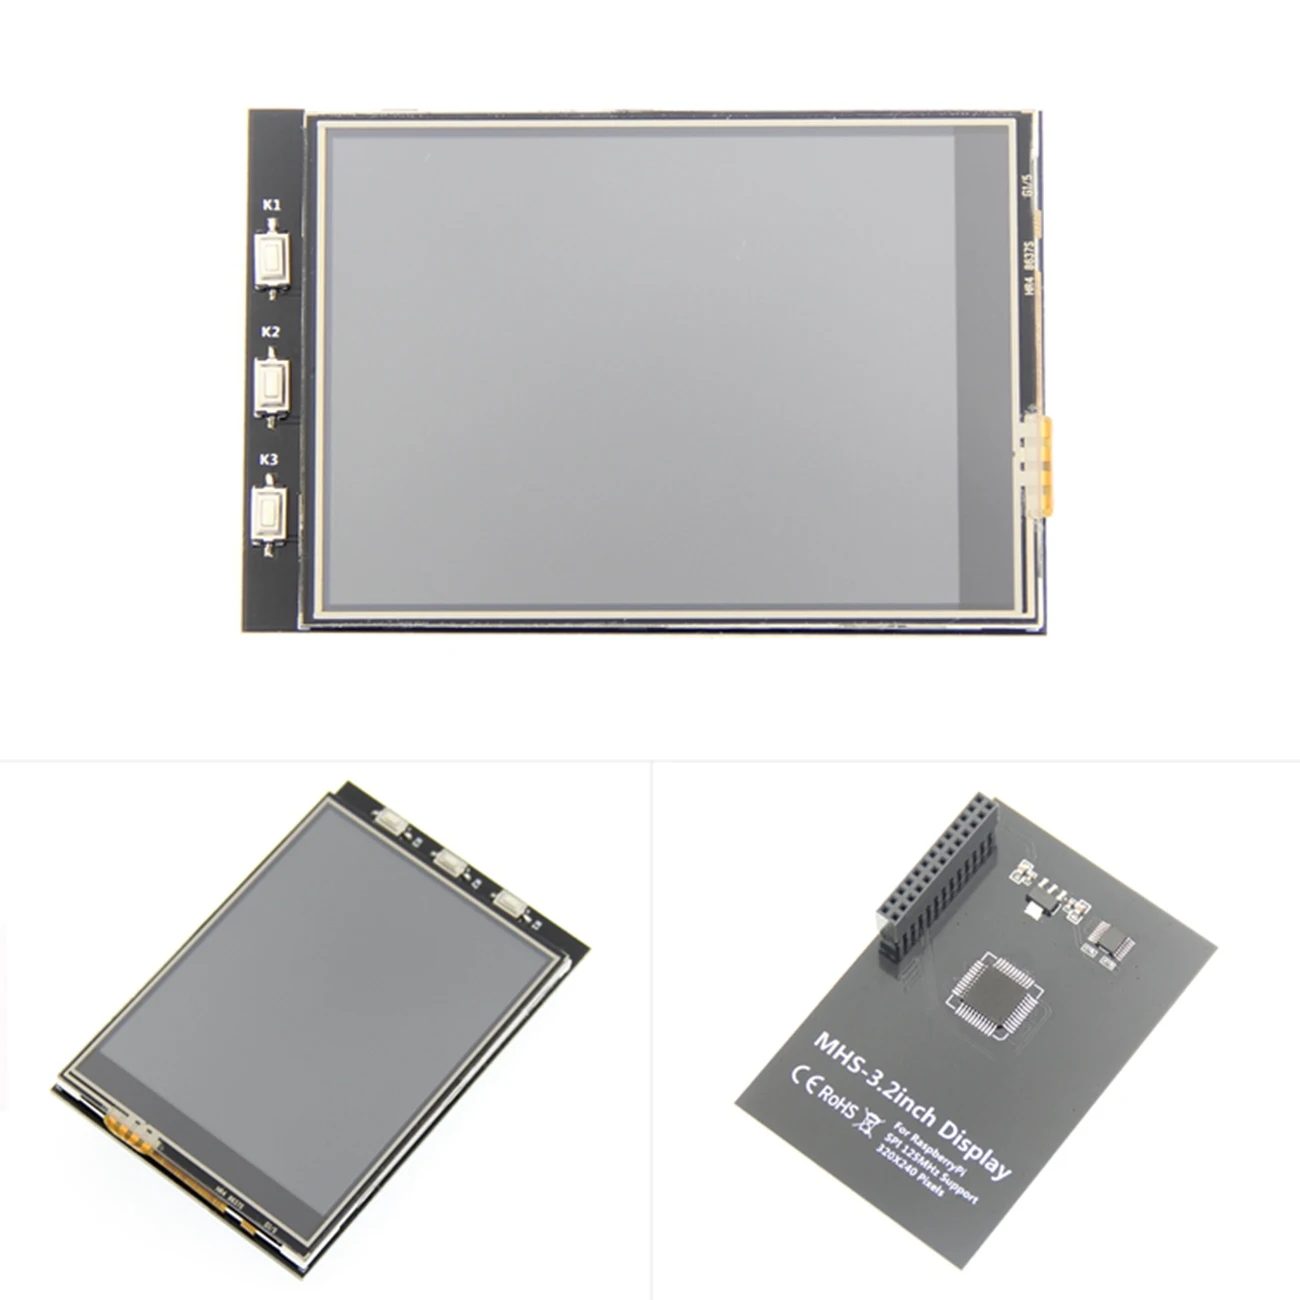 3,2/3,5/4,0 дюймов MHS на тонкопленочных транзисторах на тонкоплёночных транзисторах GPIO ЖК-дисплей модуль Экран Дисплей с сенсорным экраном Панель Поддержка 125 МГц SPI Вход для Raspberry Pi - Цвет: MHS-3.2 inch